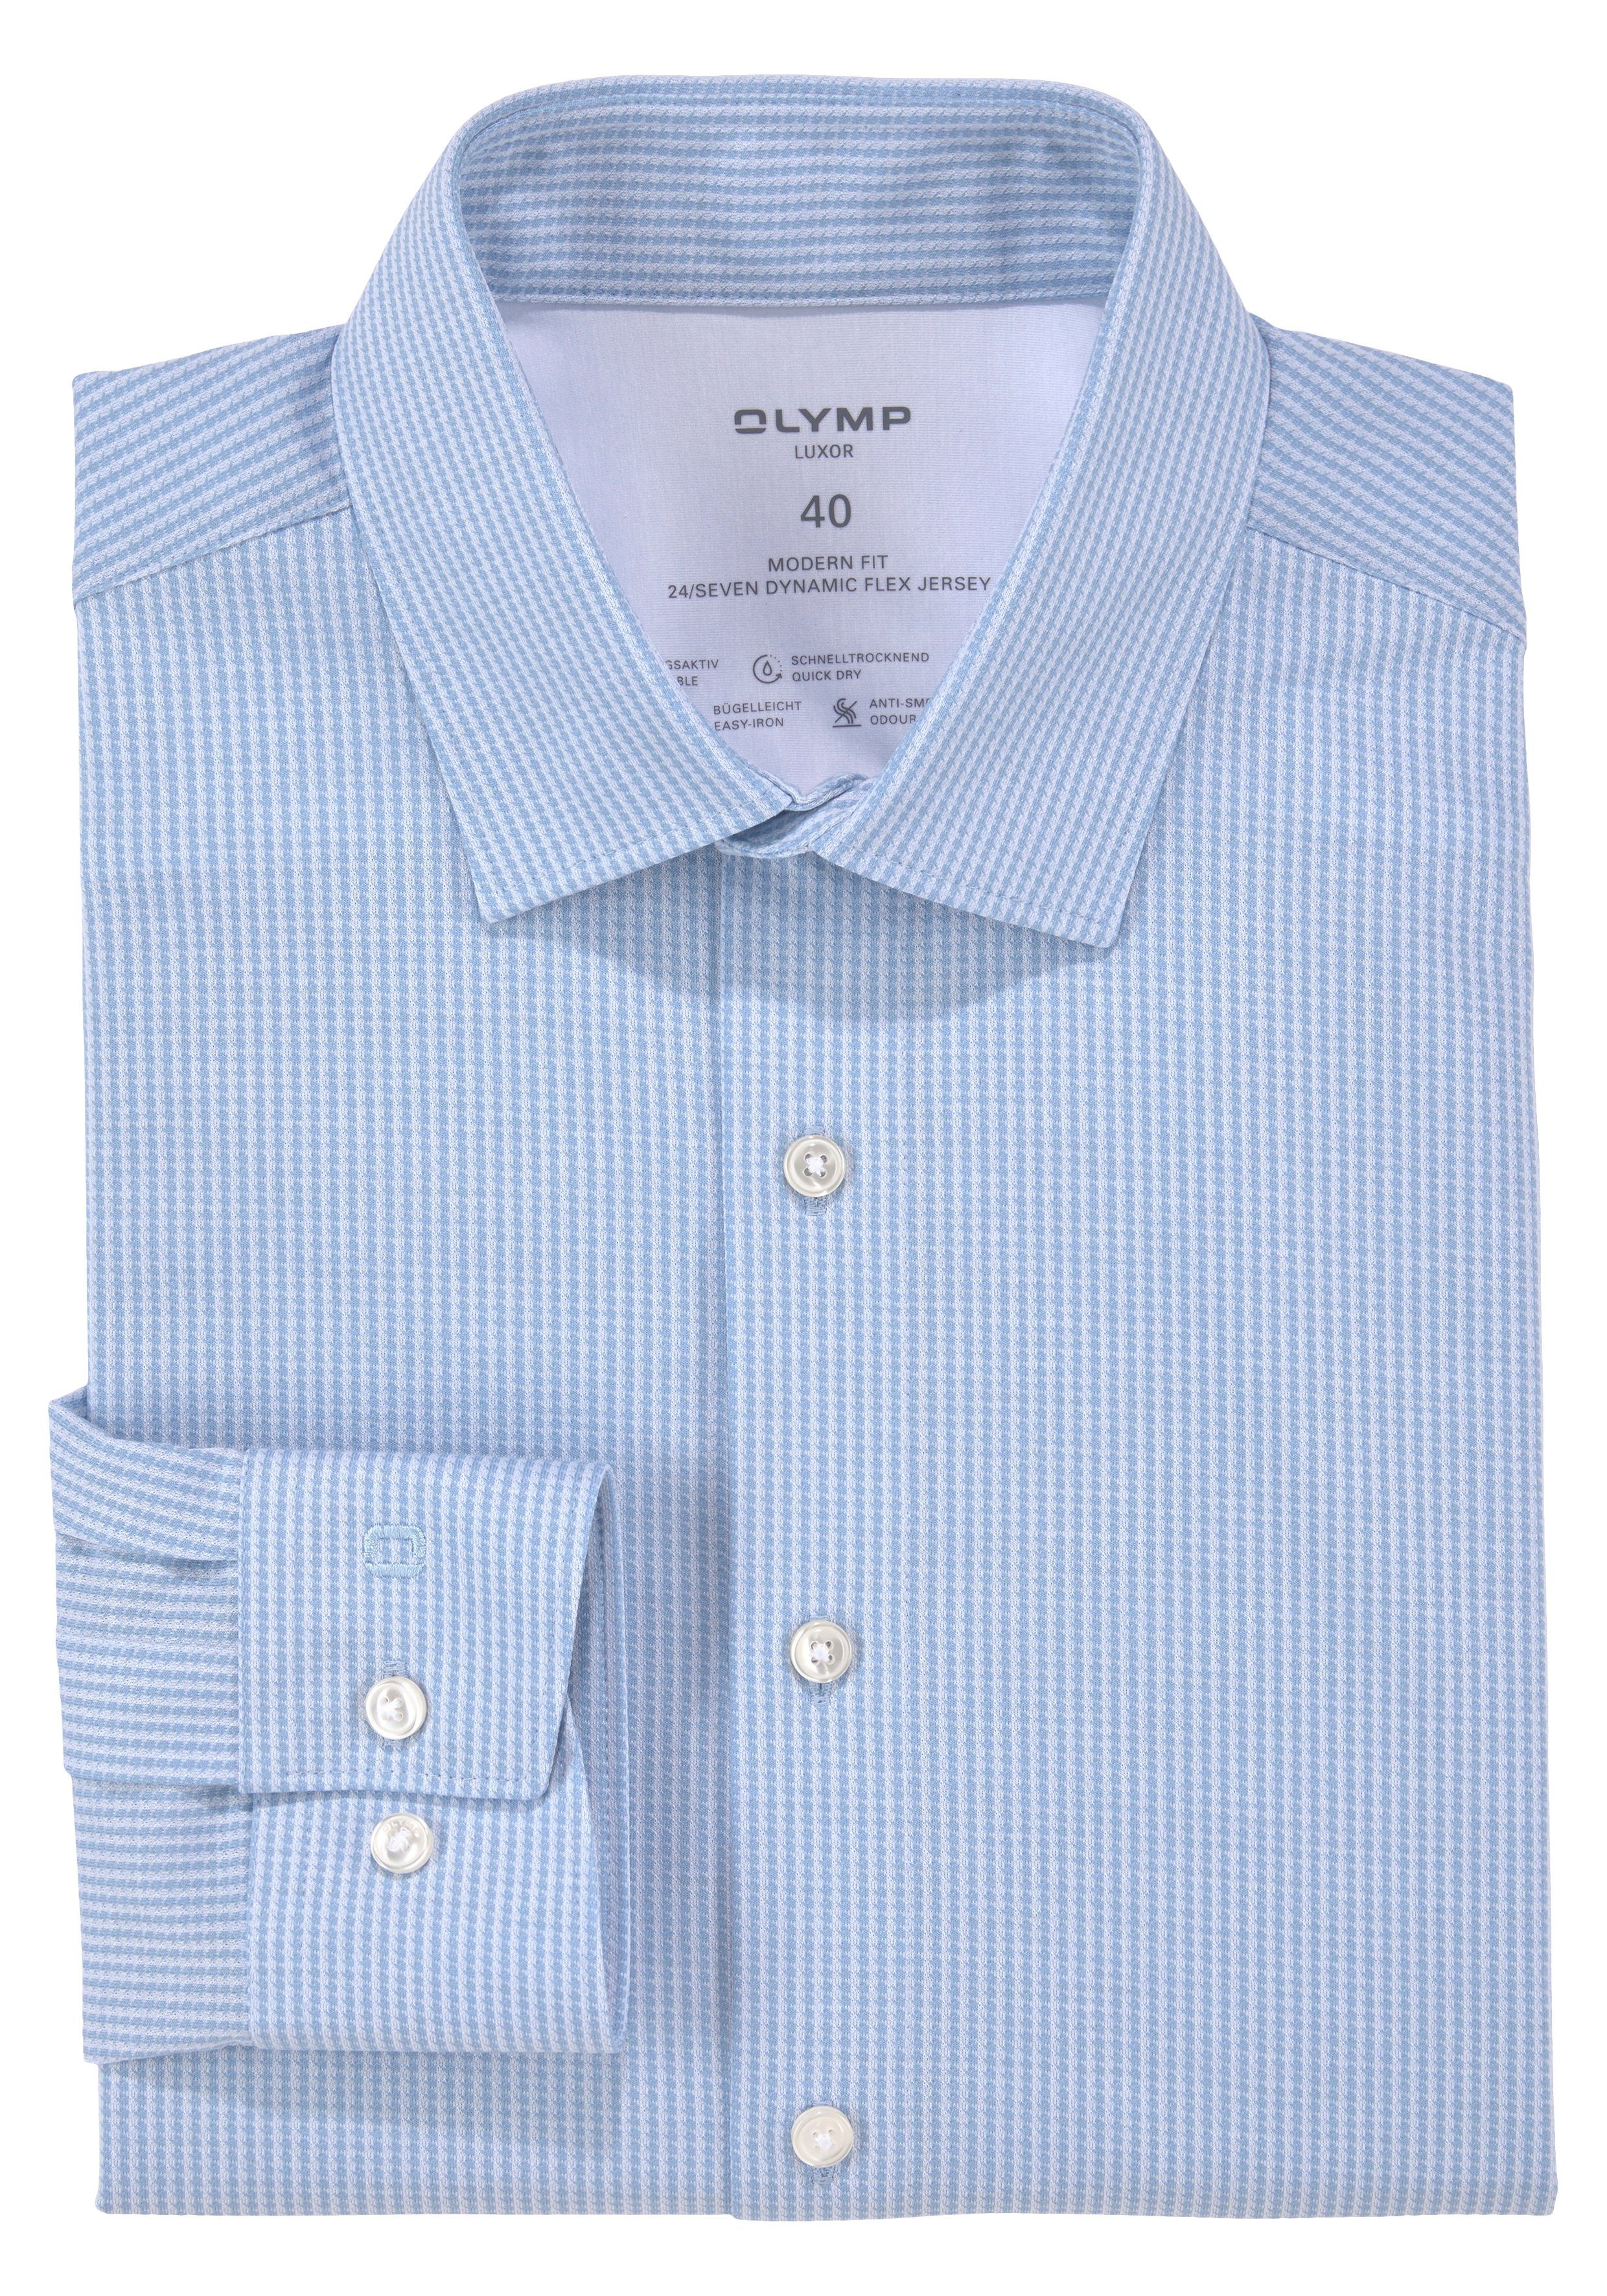 fit OLYMP dehnbar, besonders Businesshemd Luxor modern bleu bügelleicht